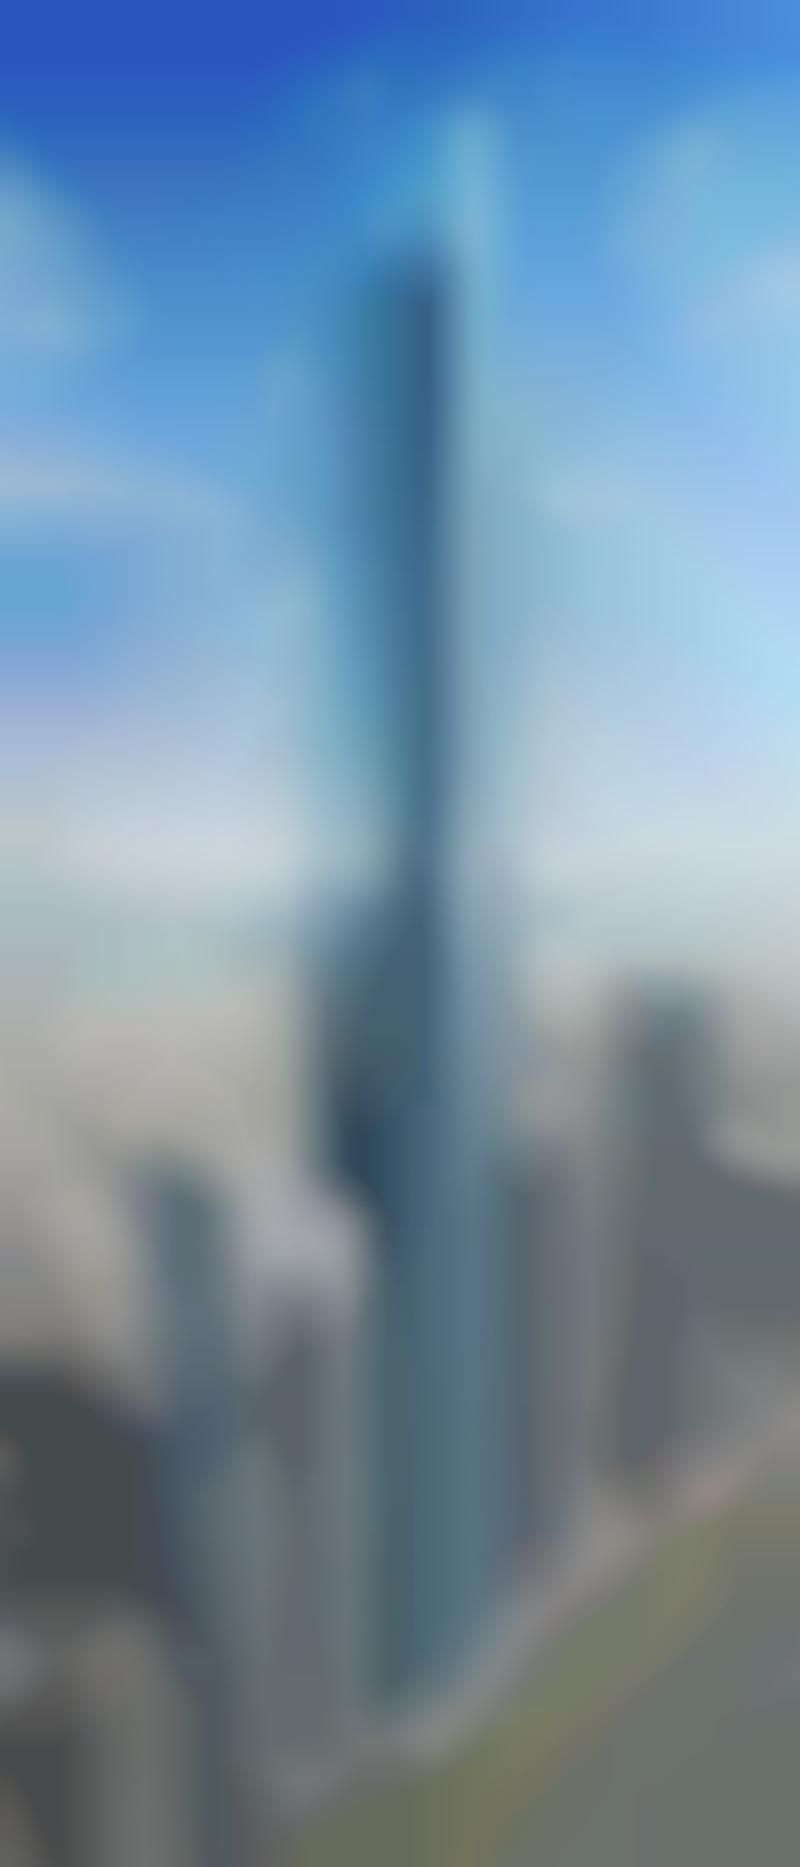 Stunning Emirati Skyscrapers